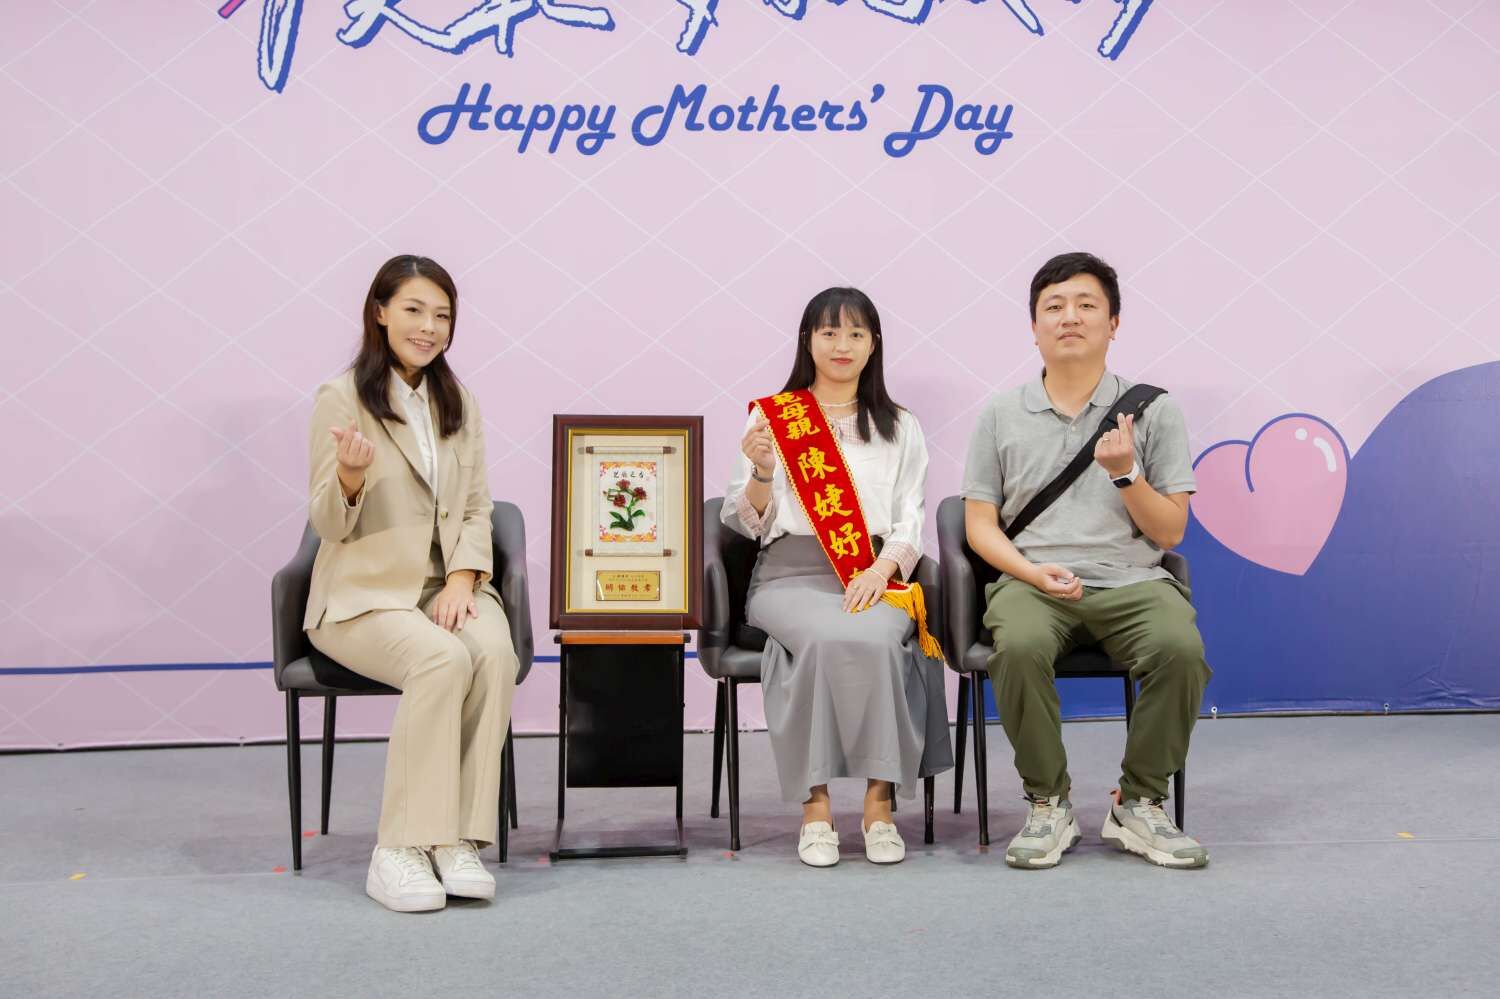 高市長頒發模範母親給當日最年輕者是28歲的陳婕妤小姐(任職於竹市警察局擔任外勤警)。